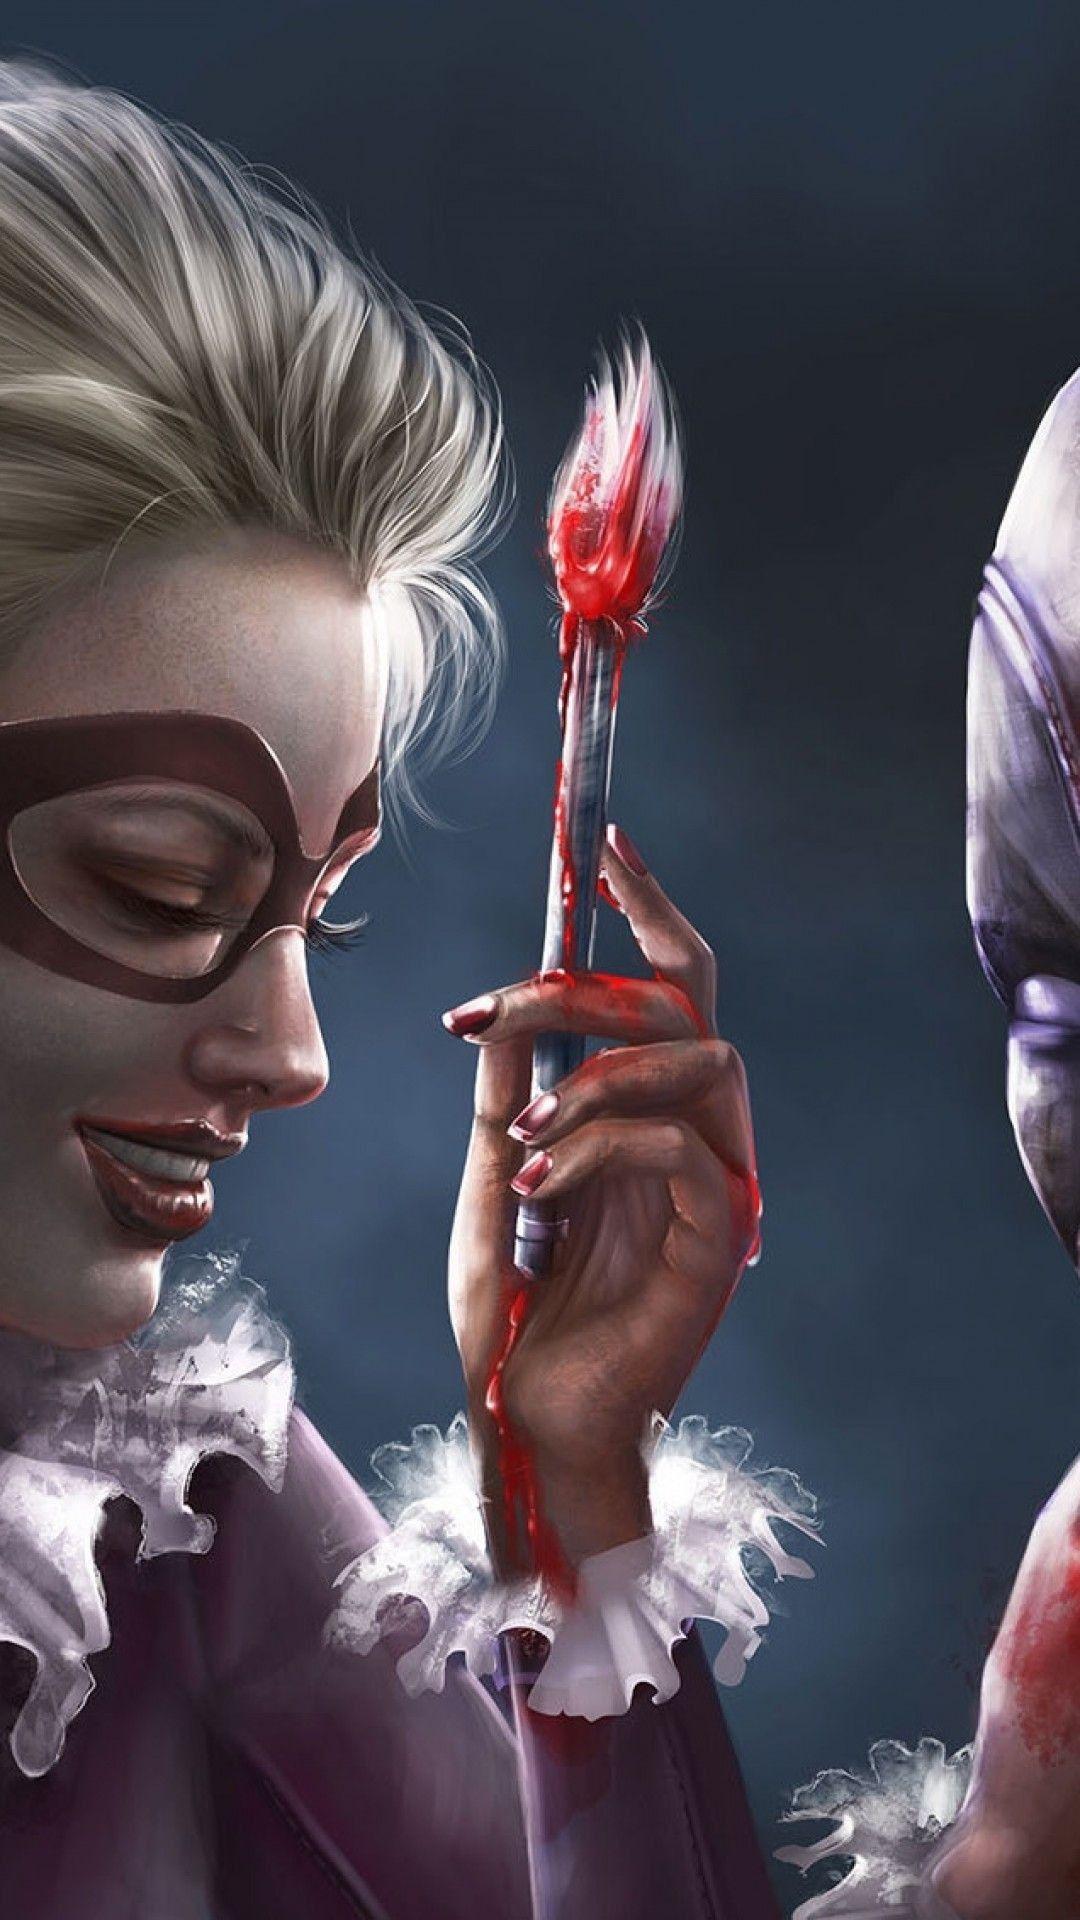 Joker and Harley Quinn Phone Wallpaper Free Joker